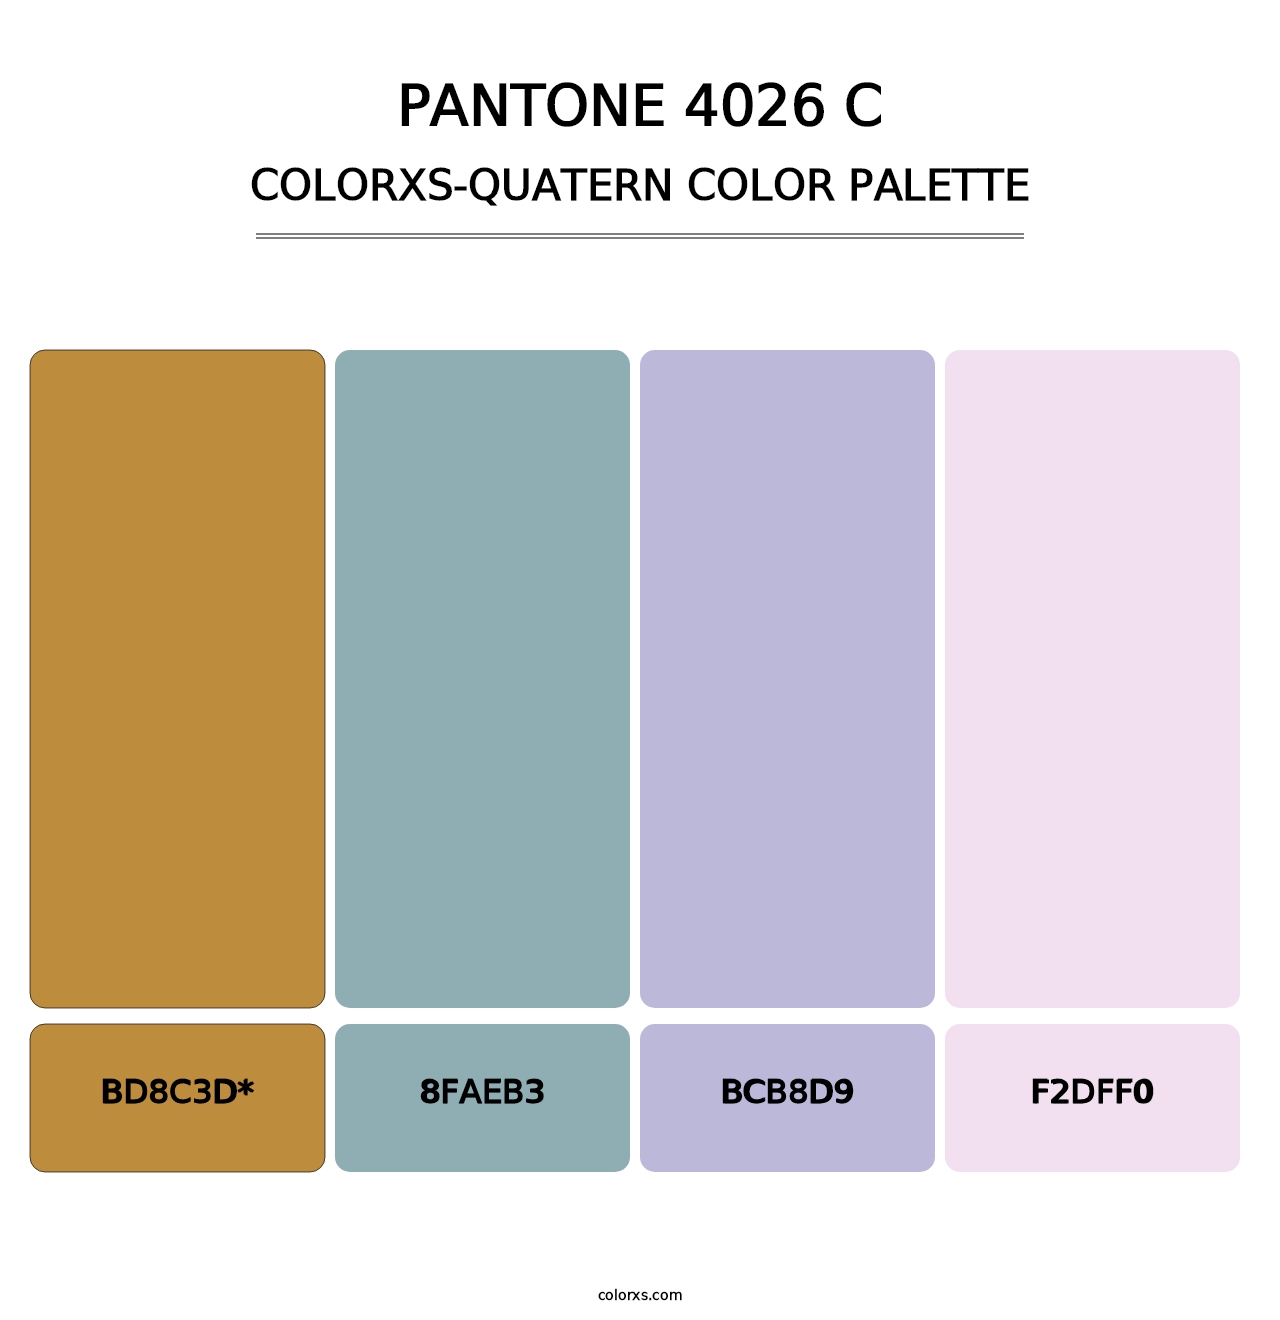 PANTONE 4026 C - Colorxs Quatern Palette